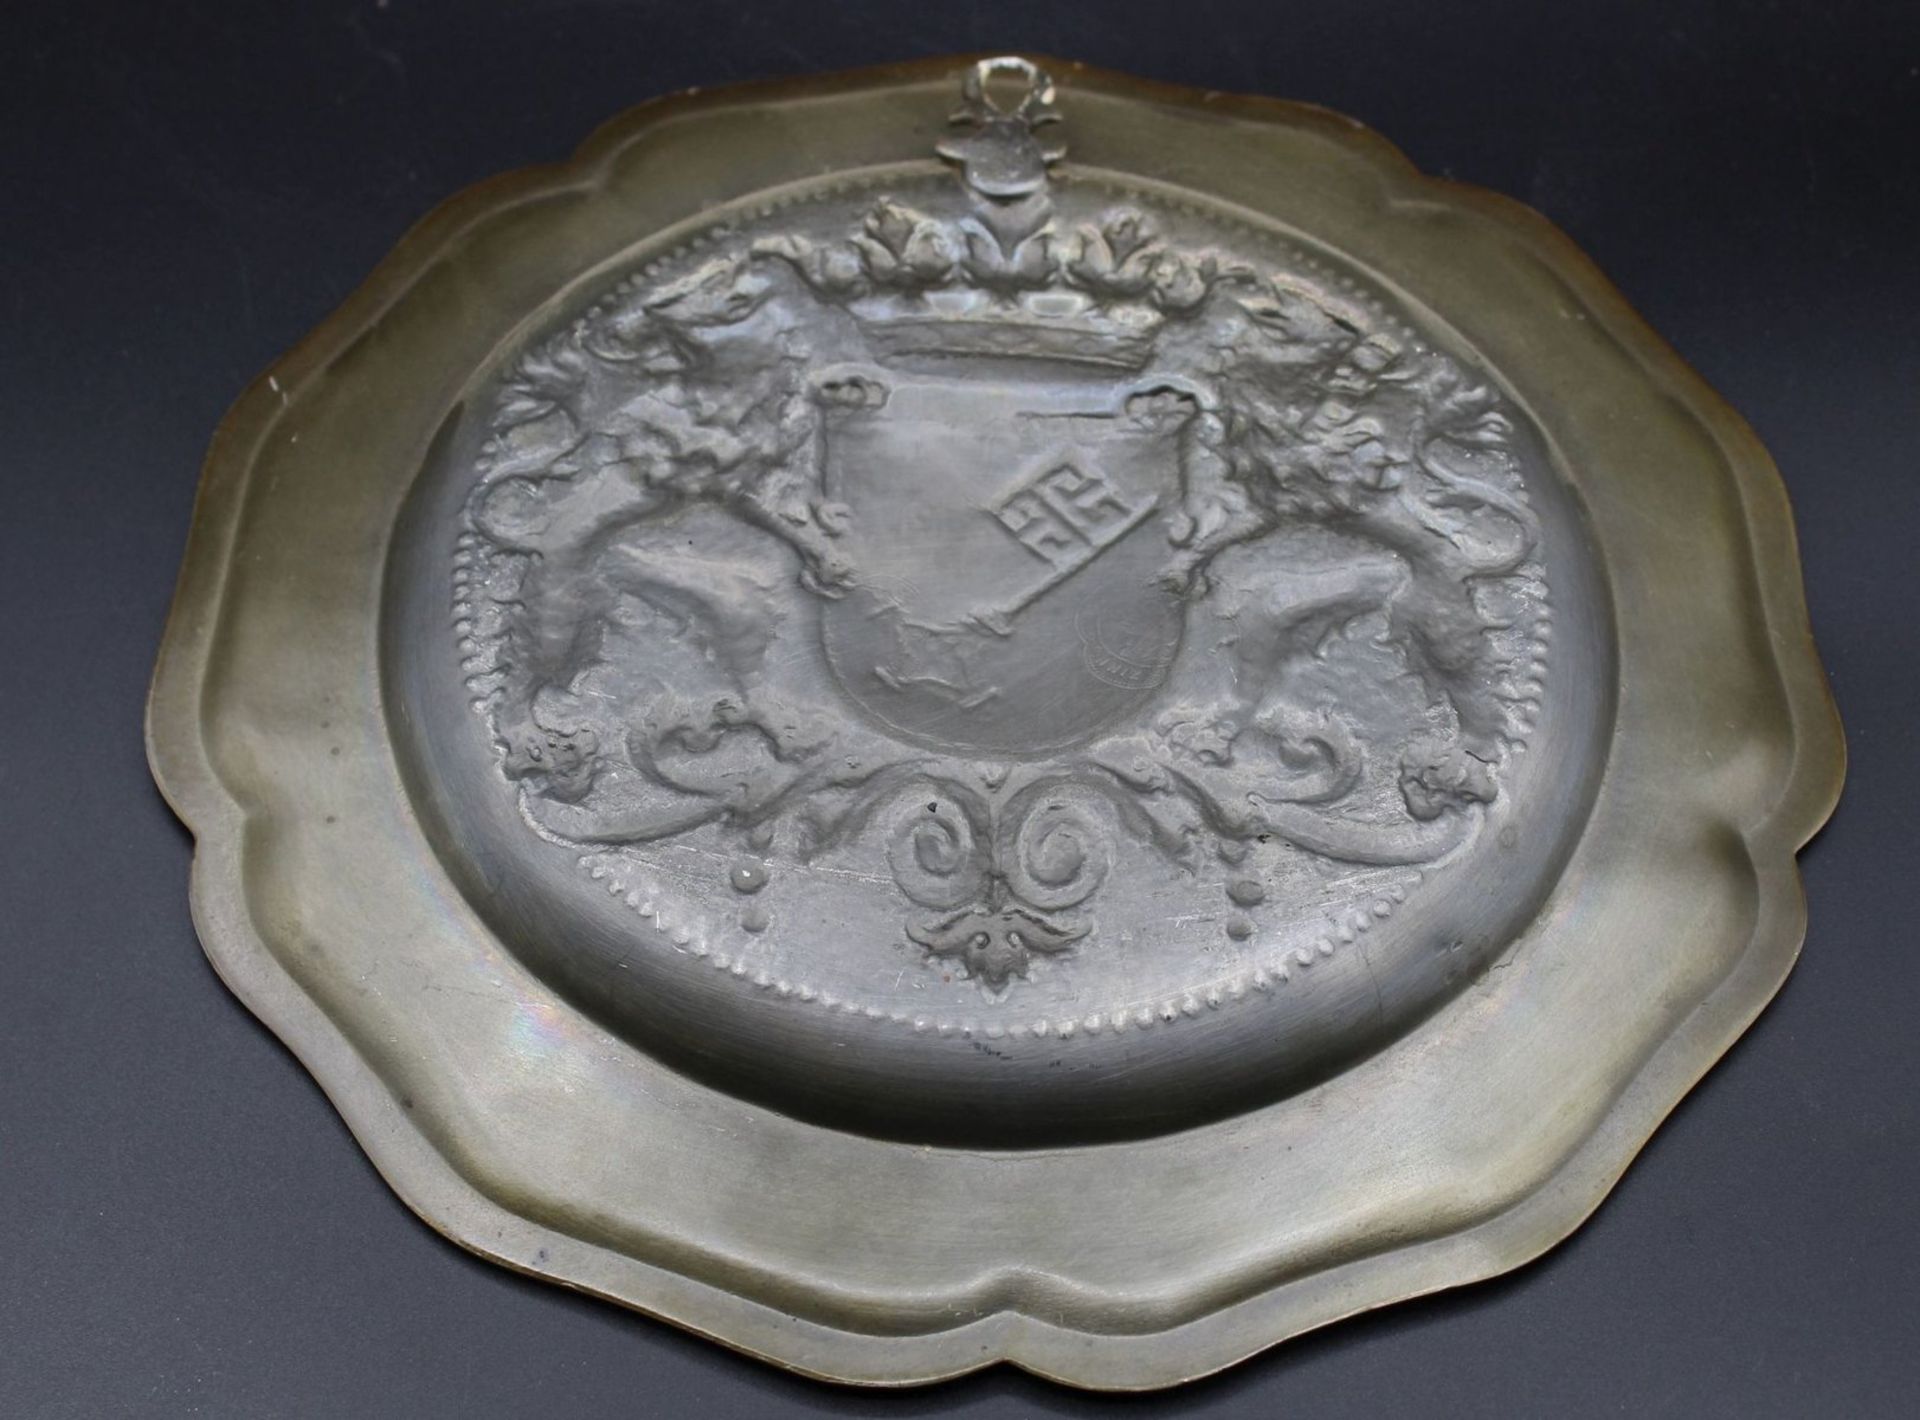 Wandteller, Zinn bronziert, Bremer Wappen, D-24cm. - Image 2 of 3